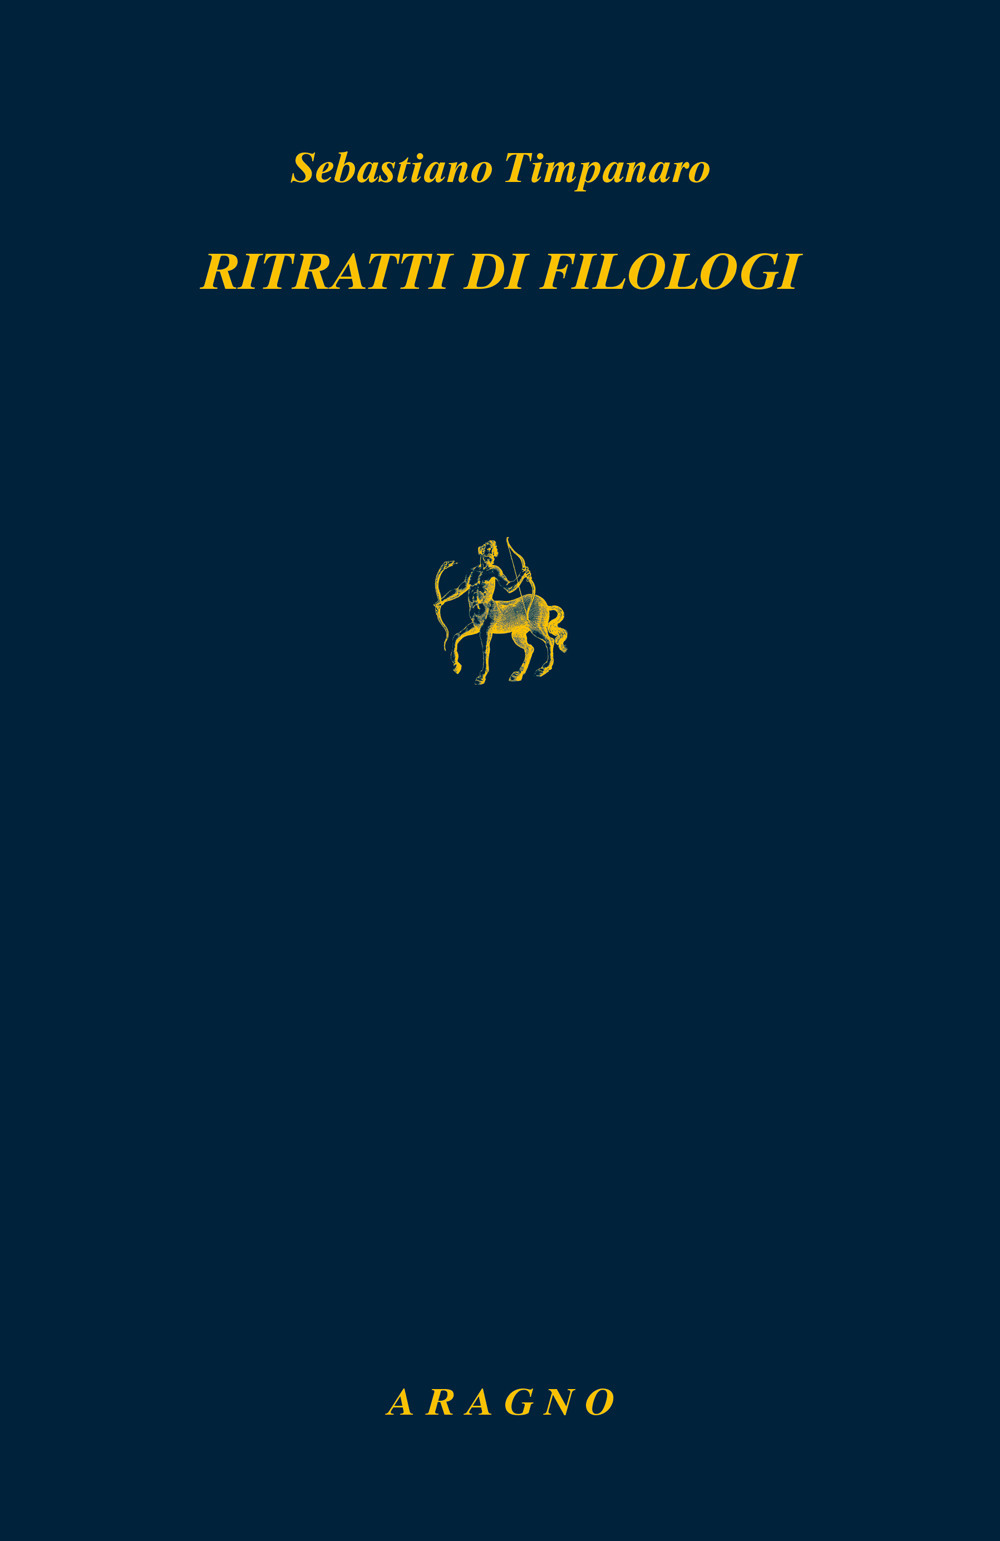 Ritratti di filologi